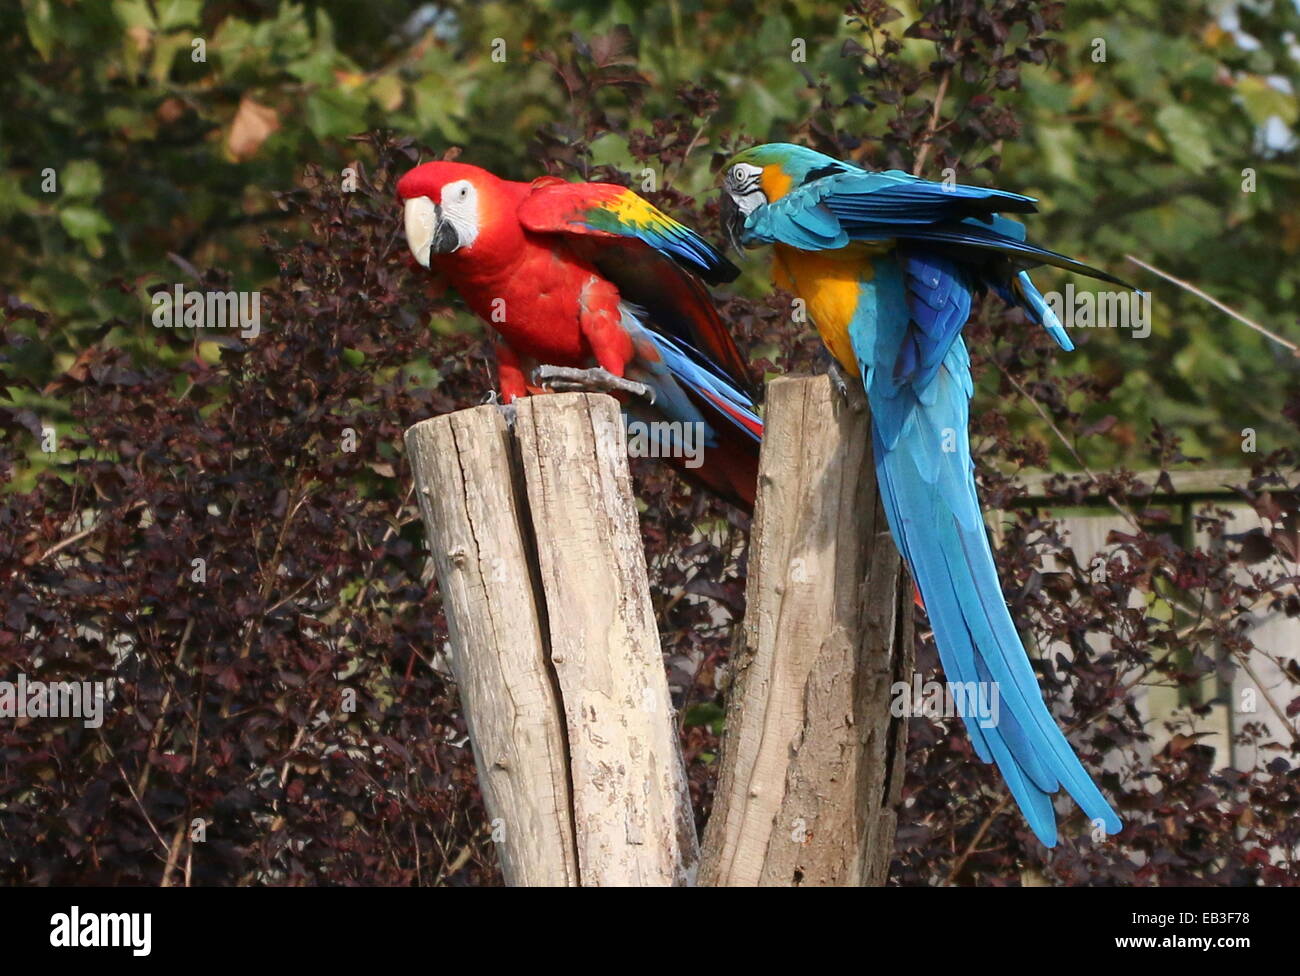 Blue-and-yellow macaw (Ara ararauna) avec un ara rouge (Ara macao au Zoo de Rotterdam Blijdorp démonstration d'oiseaux Banque D'Images